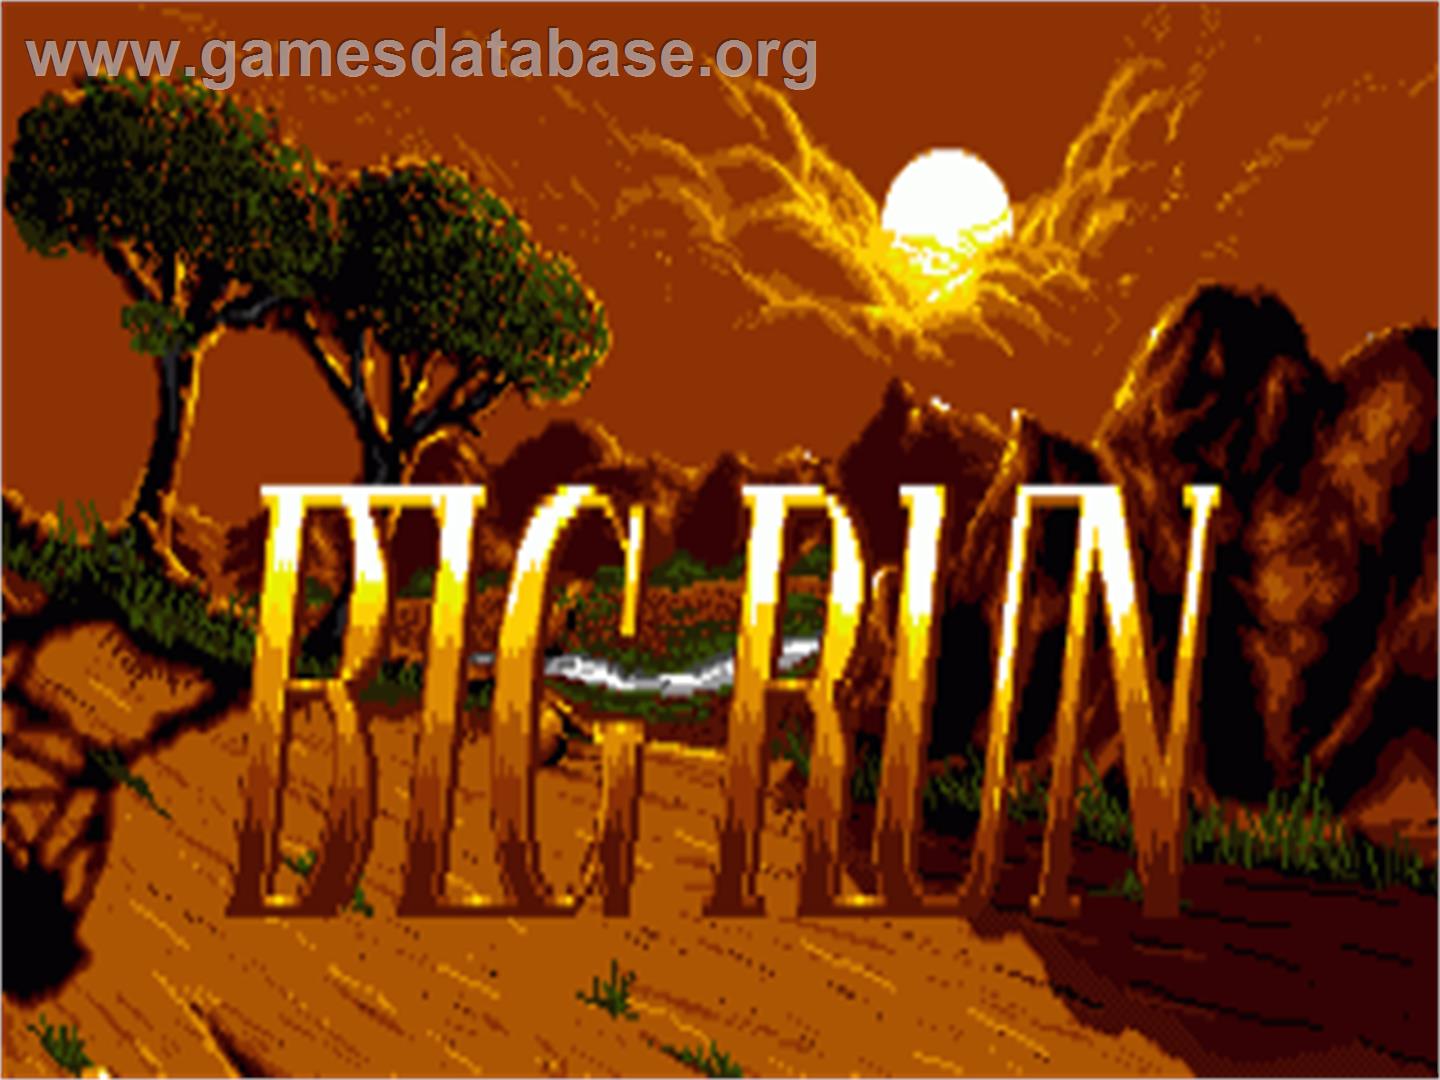 Big Run - Commodore Amiga - Artwork - Title Screen